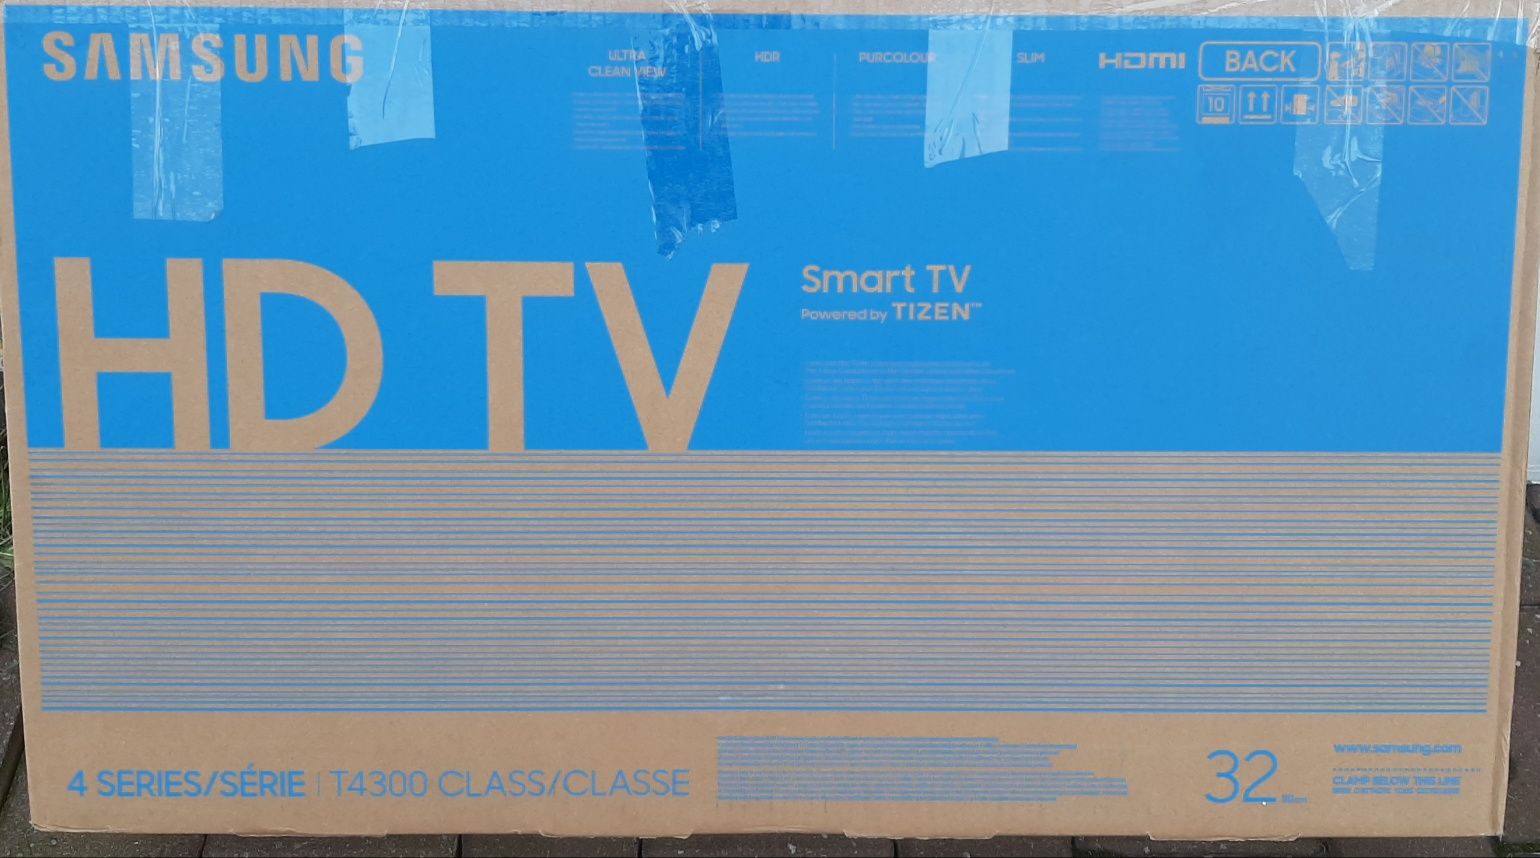 Telewizor LED 32 samsung SmartTV Wifi gwarancja najnowsz seria NETFLIX